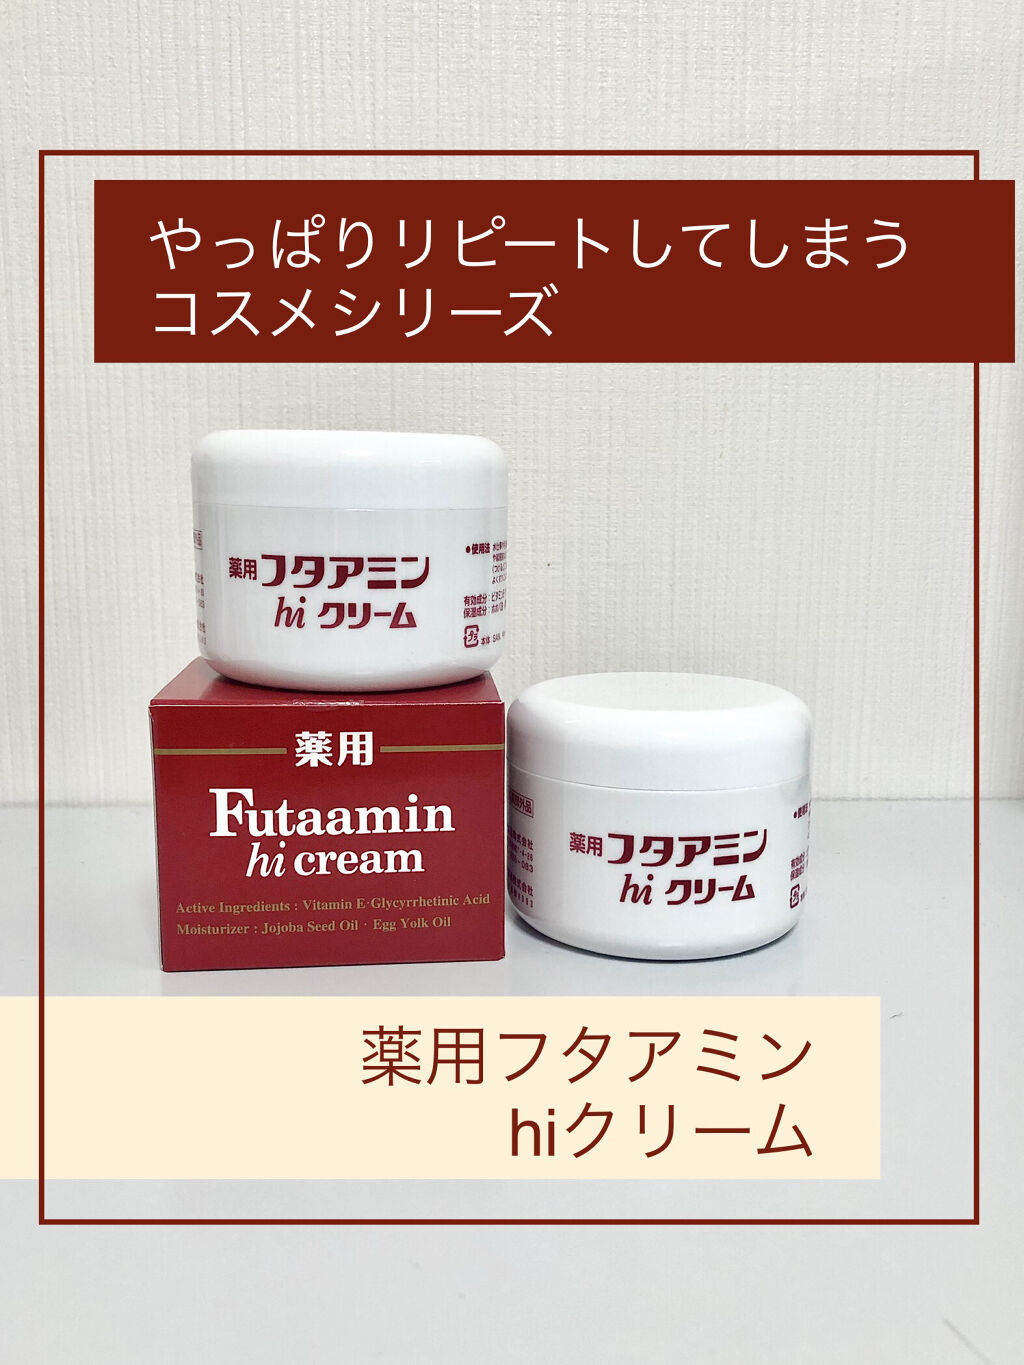 フタアミンhiクリーム 55g / ムサシノ製薬 | LIPS